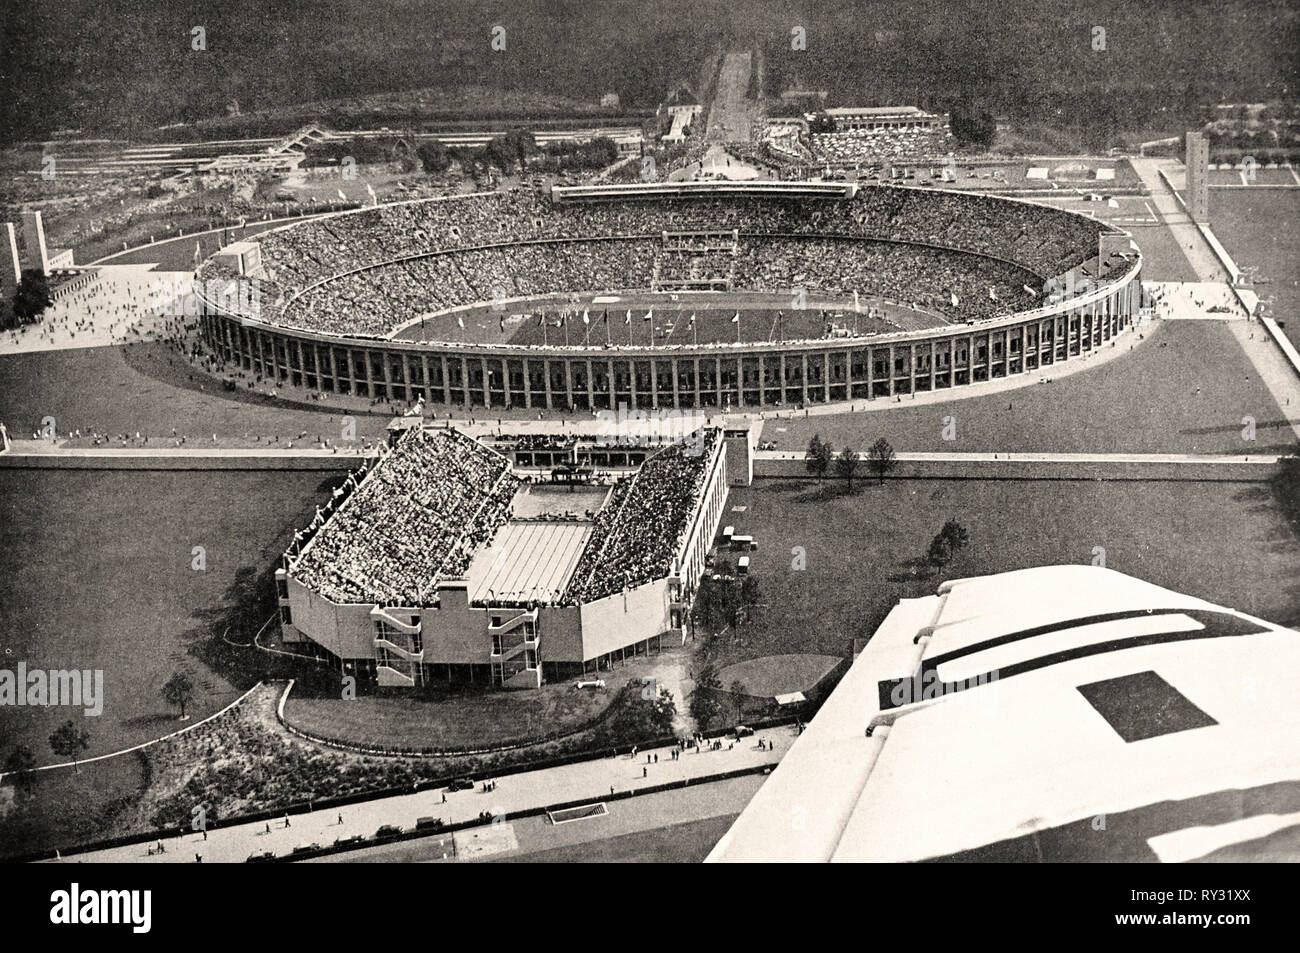 Jeux Olympiques de 1936 Berlin - l'Arène Olympique et stade de natation aux Jeux Olympiques de Berlin en 1936 Banque D'Images